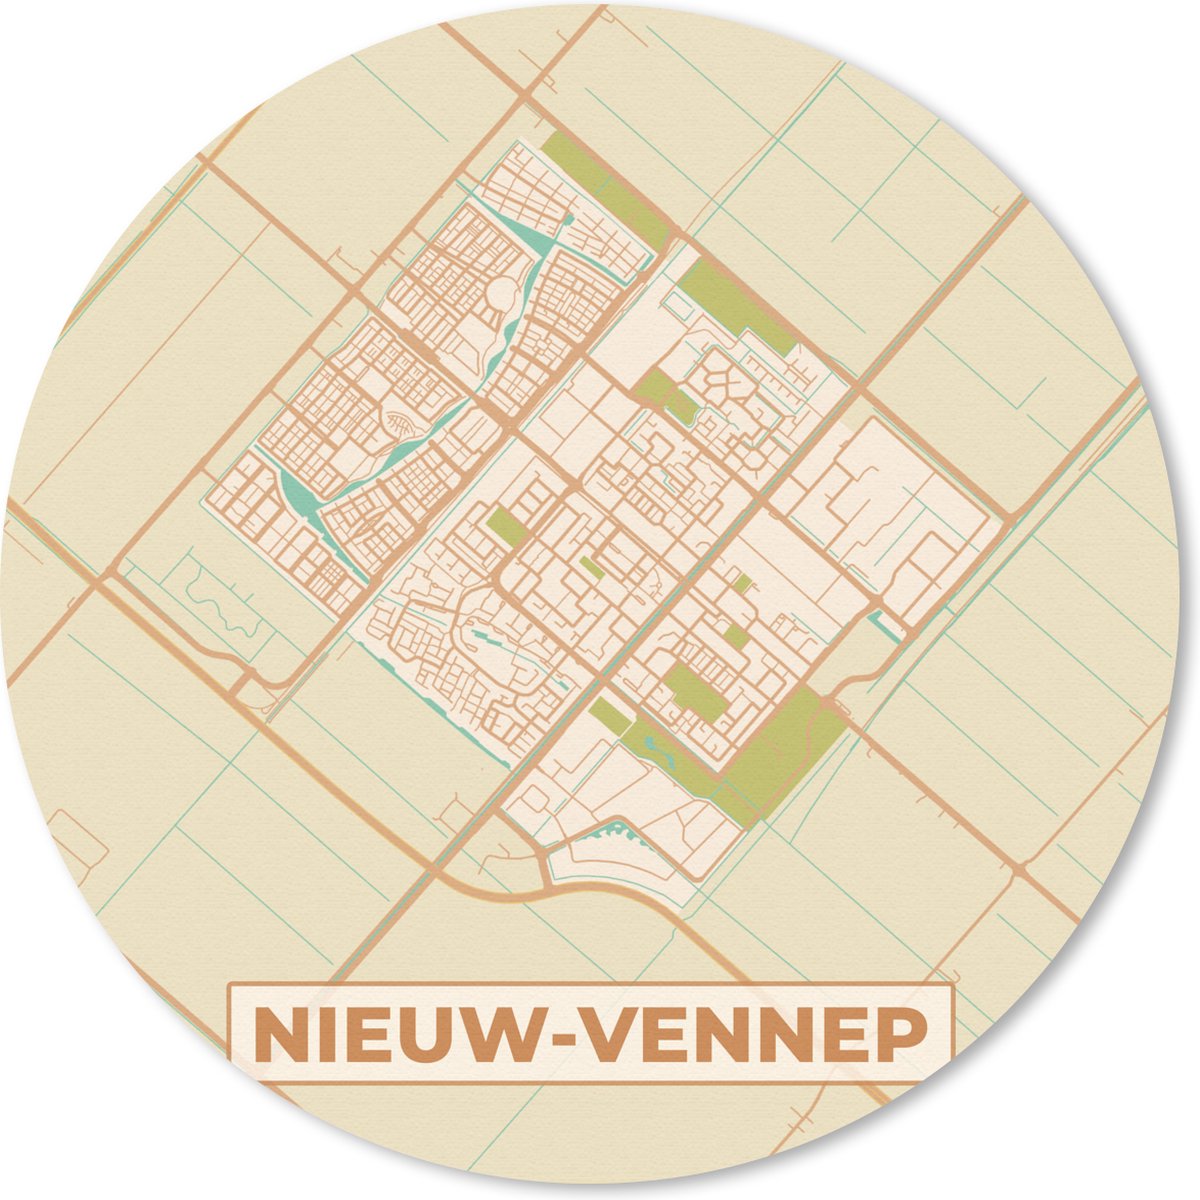 Muismat - Mousepad - Rond - Nieuw-Vennep - Stadskaart - Kaart - Plattegrond - 20x20 cm - Ronde muismat - MousePadParadise